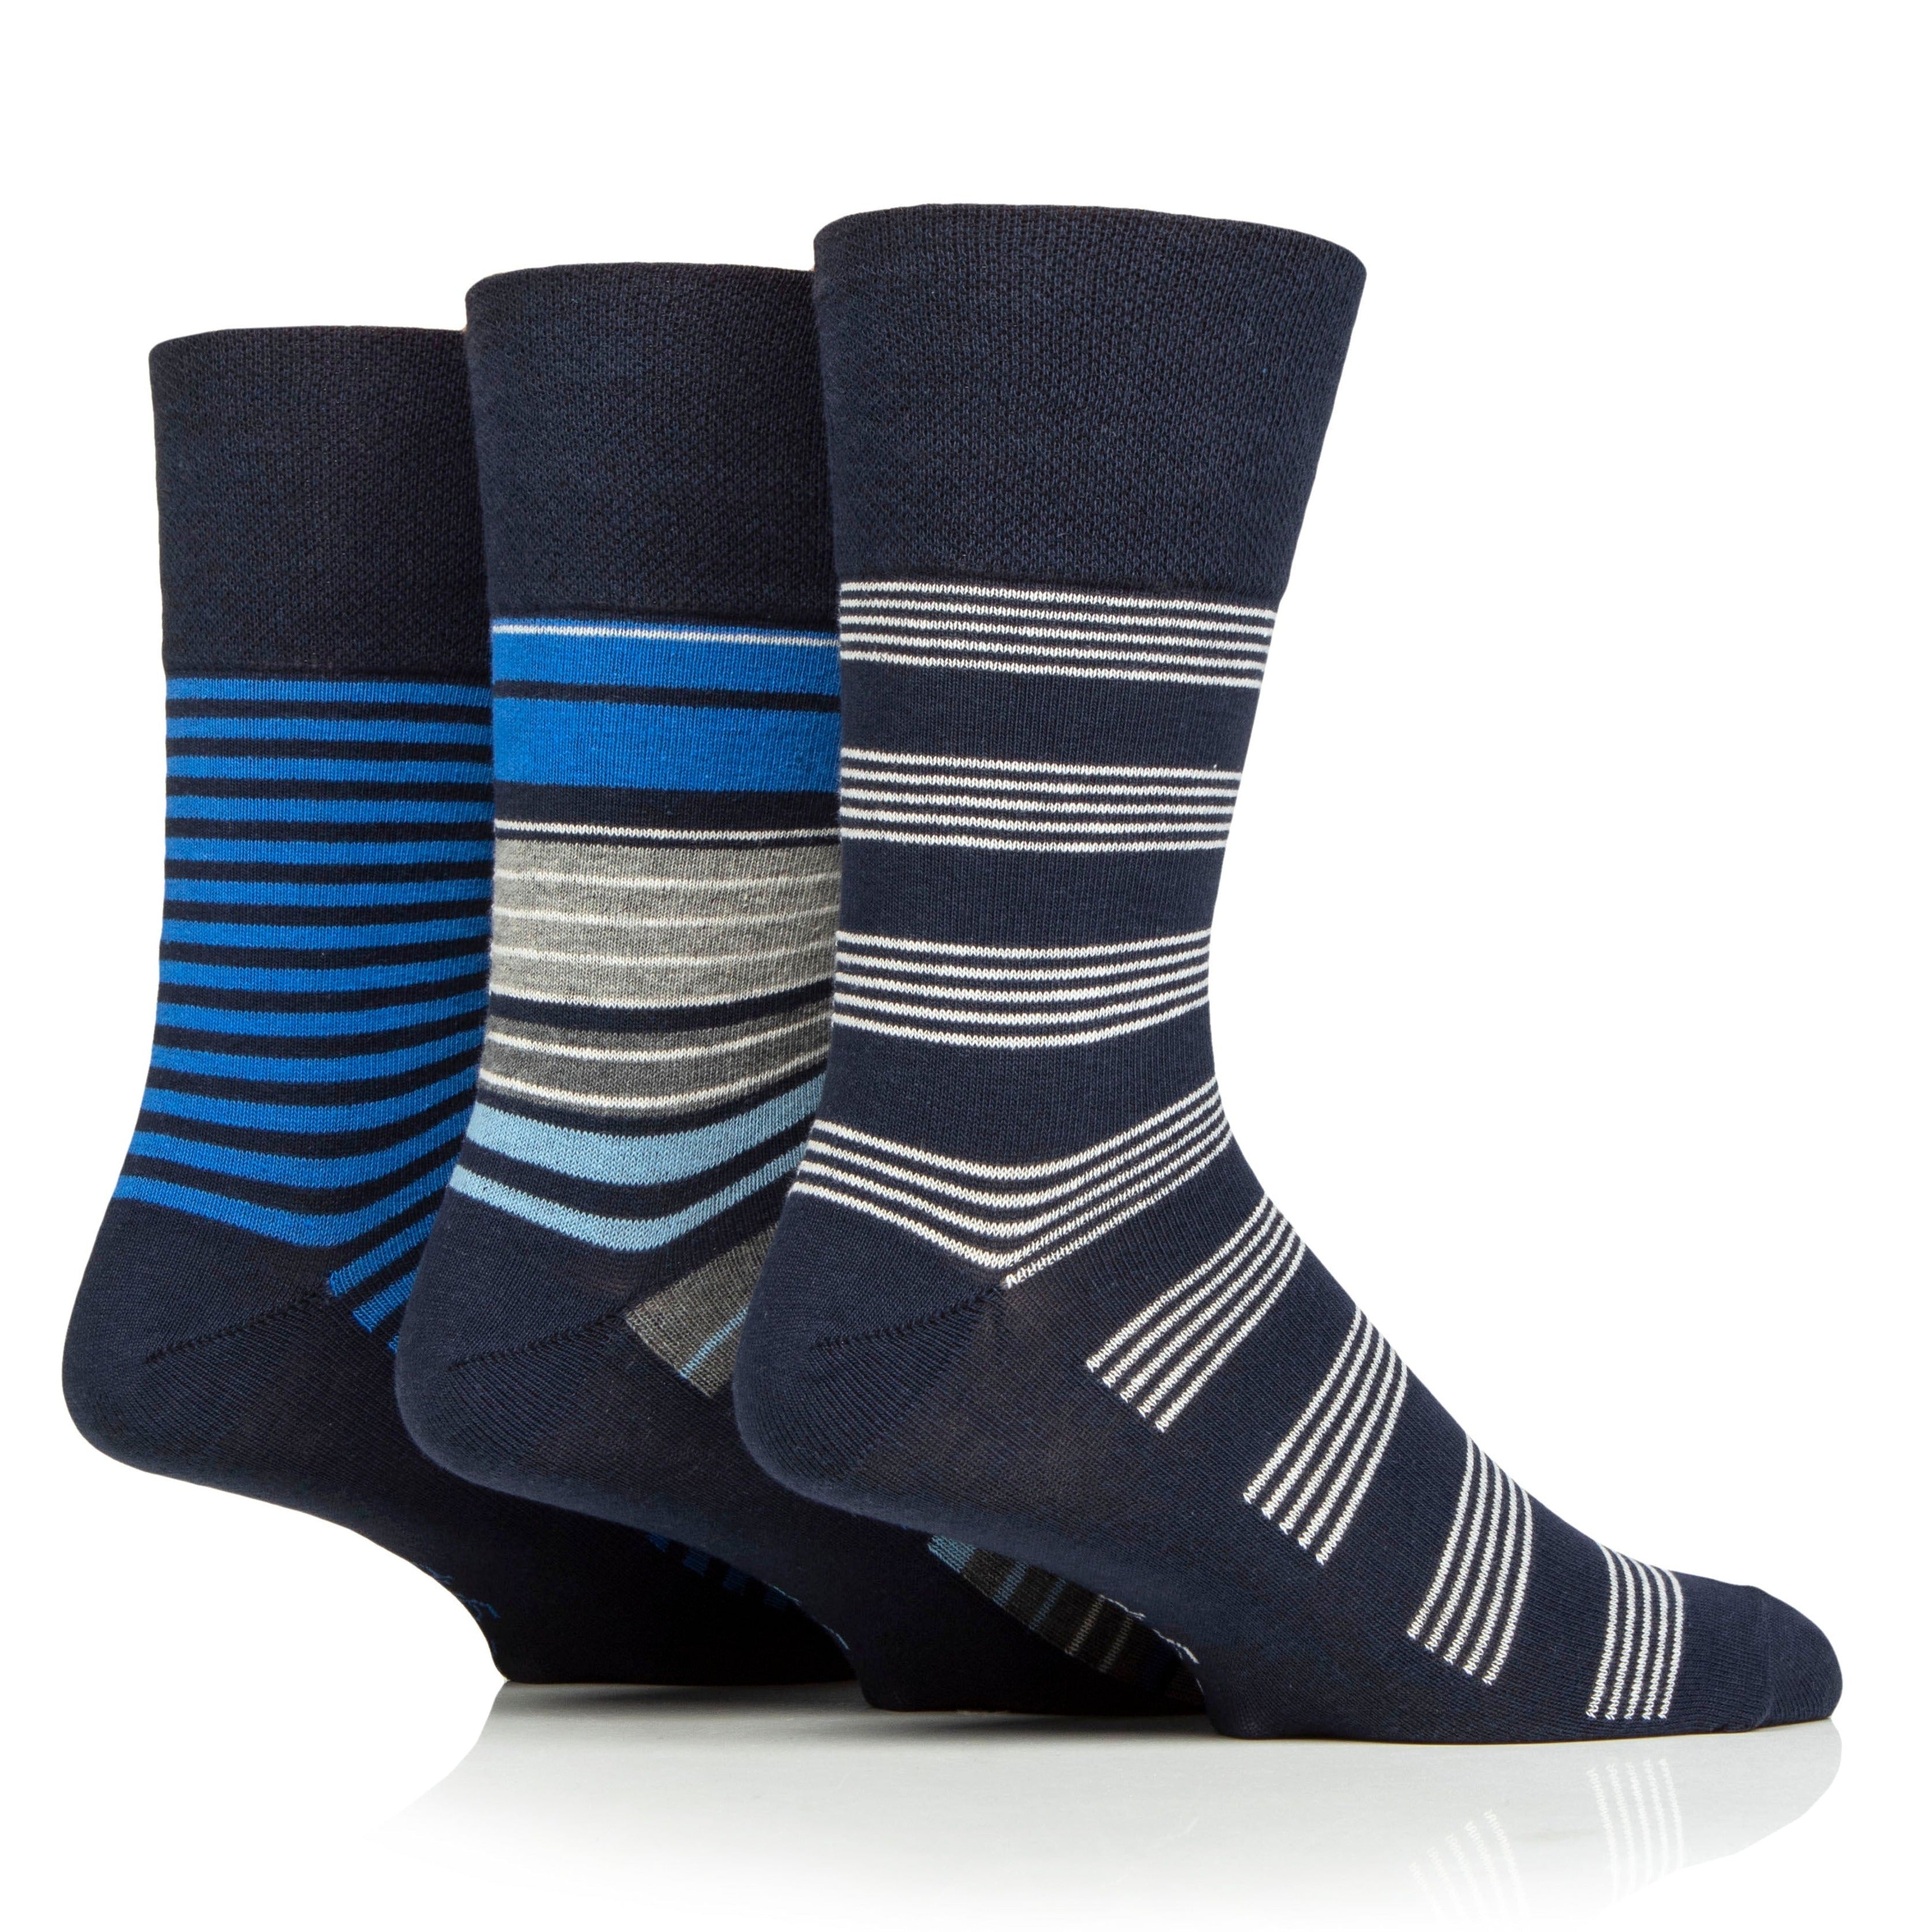 GENTLE GRIP 3Pk Printed Stripe Business Socks - Men's